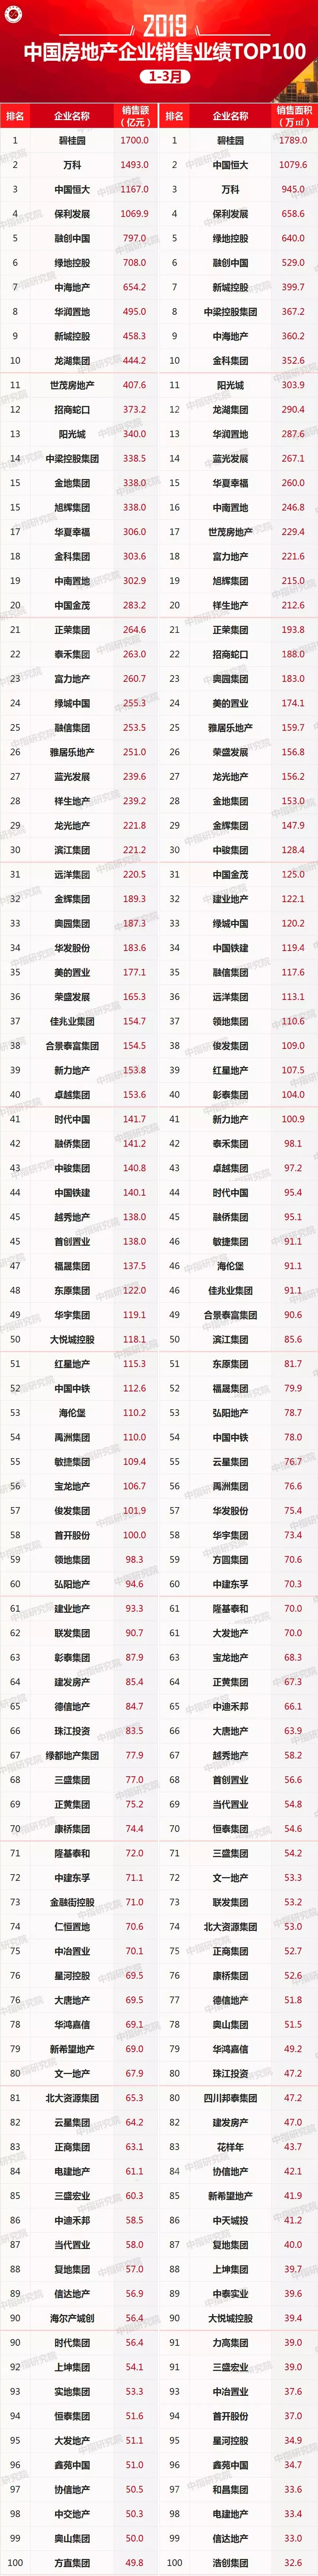 2019年1-3月中国房地产企业销售业绩100